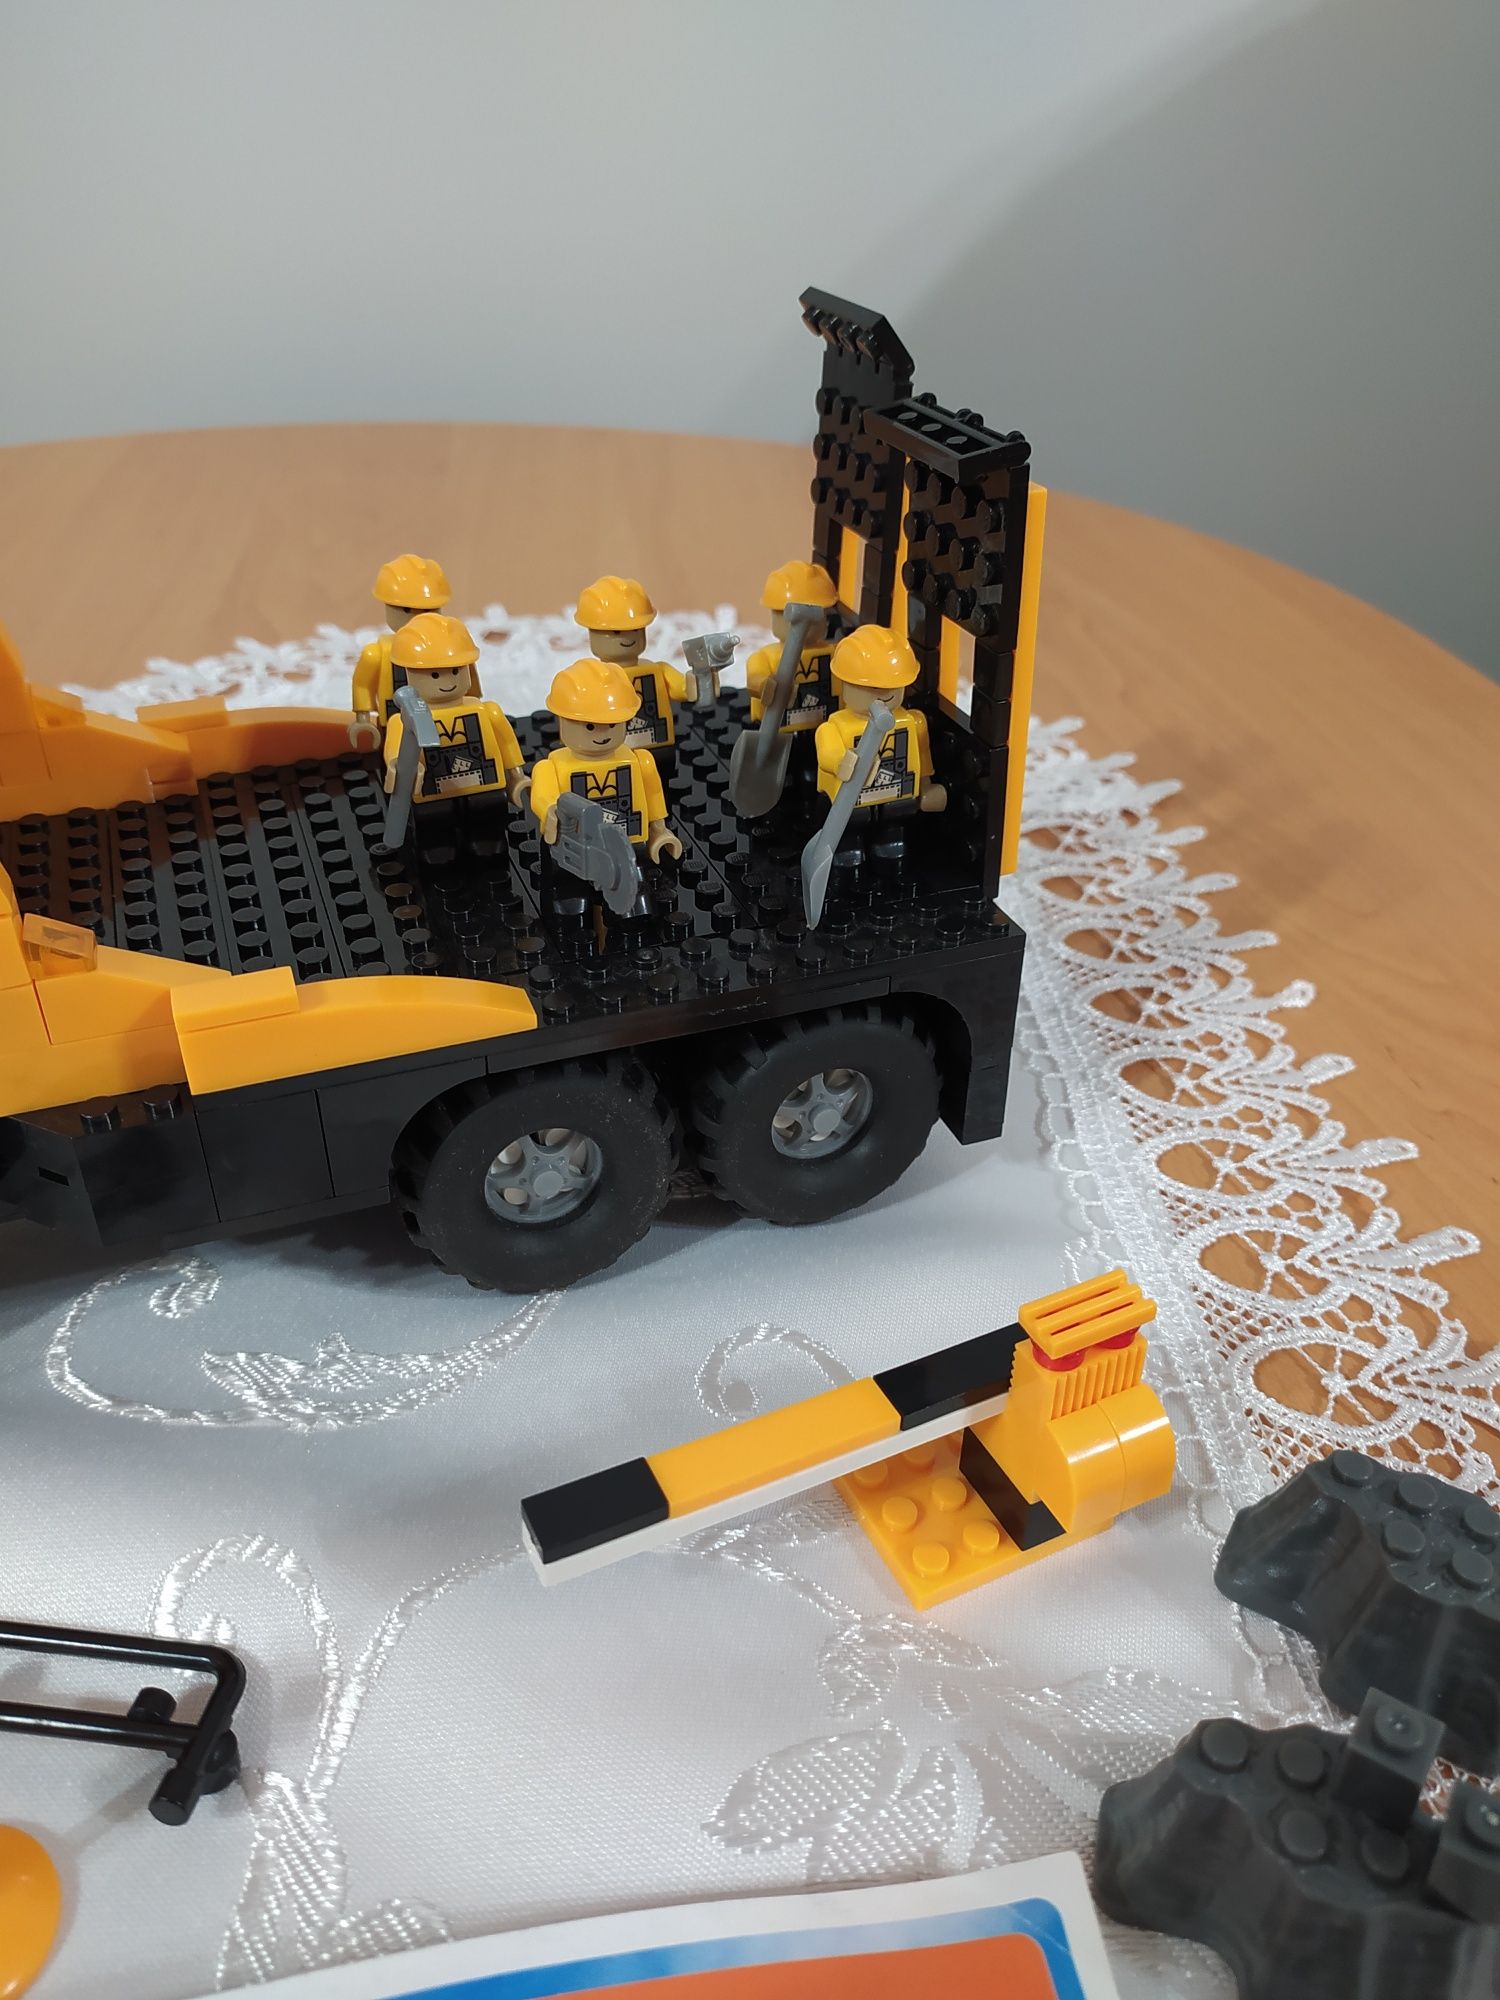 Lego inne klocki roboty drogowe duża ciężarówka